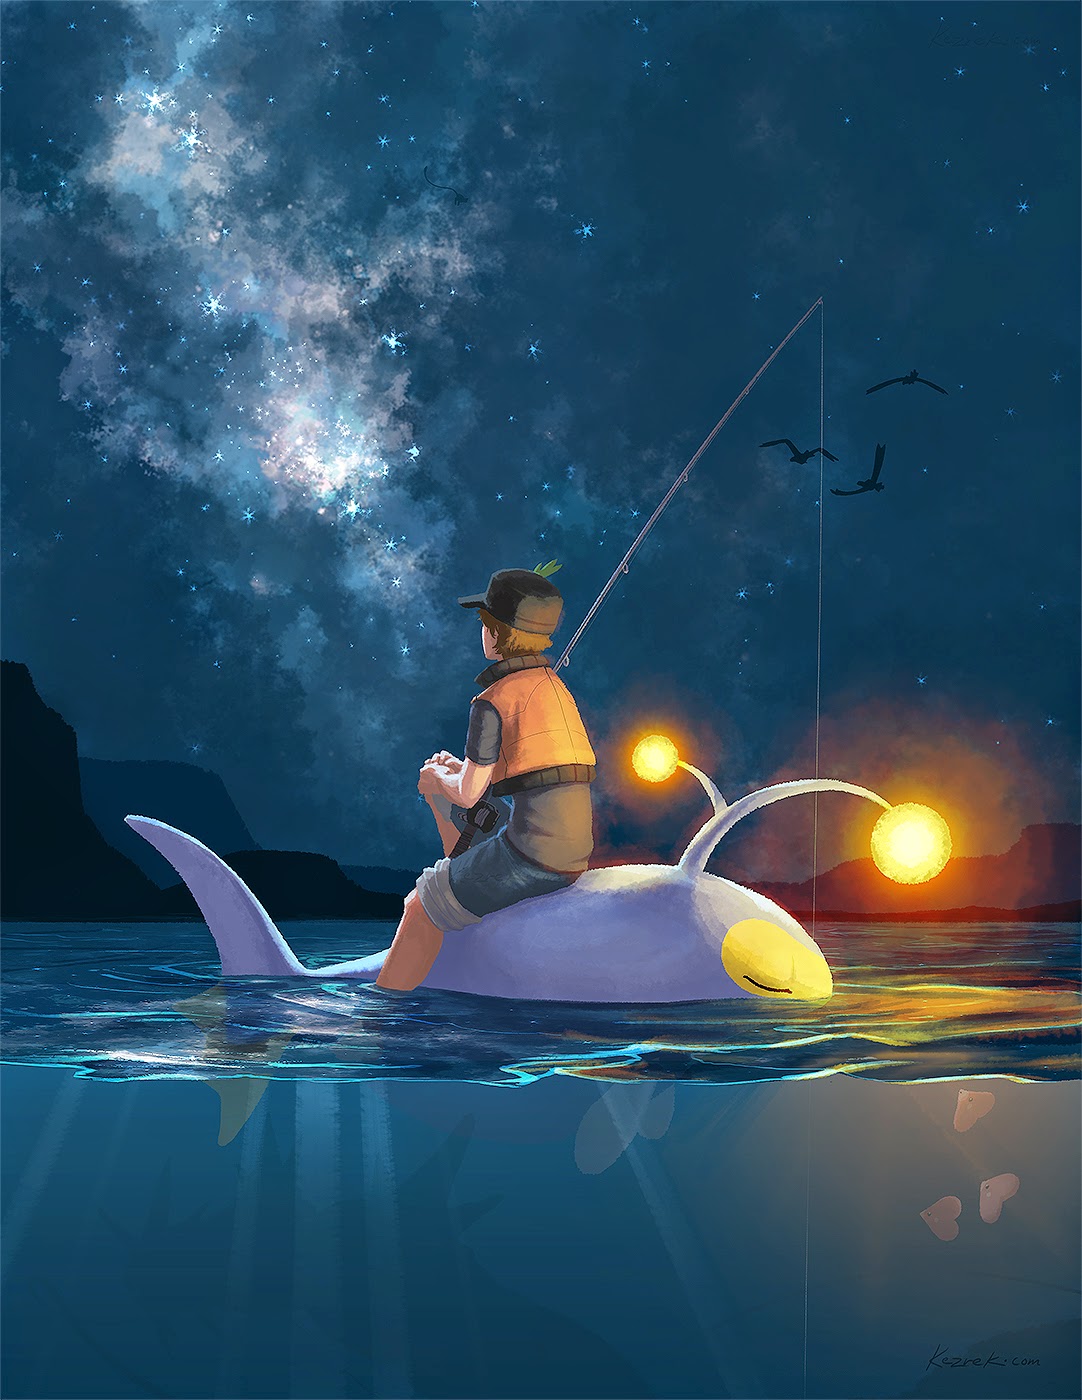 Risultati immagini per pokemon night fishing lanturn